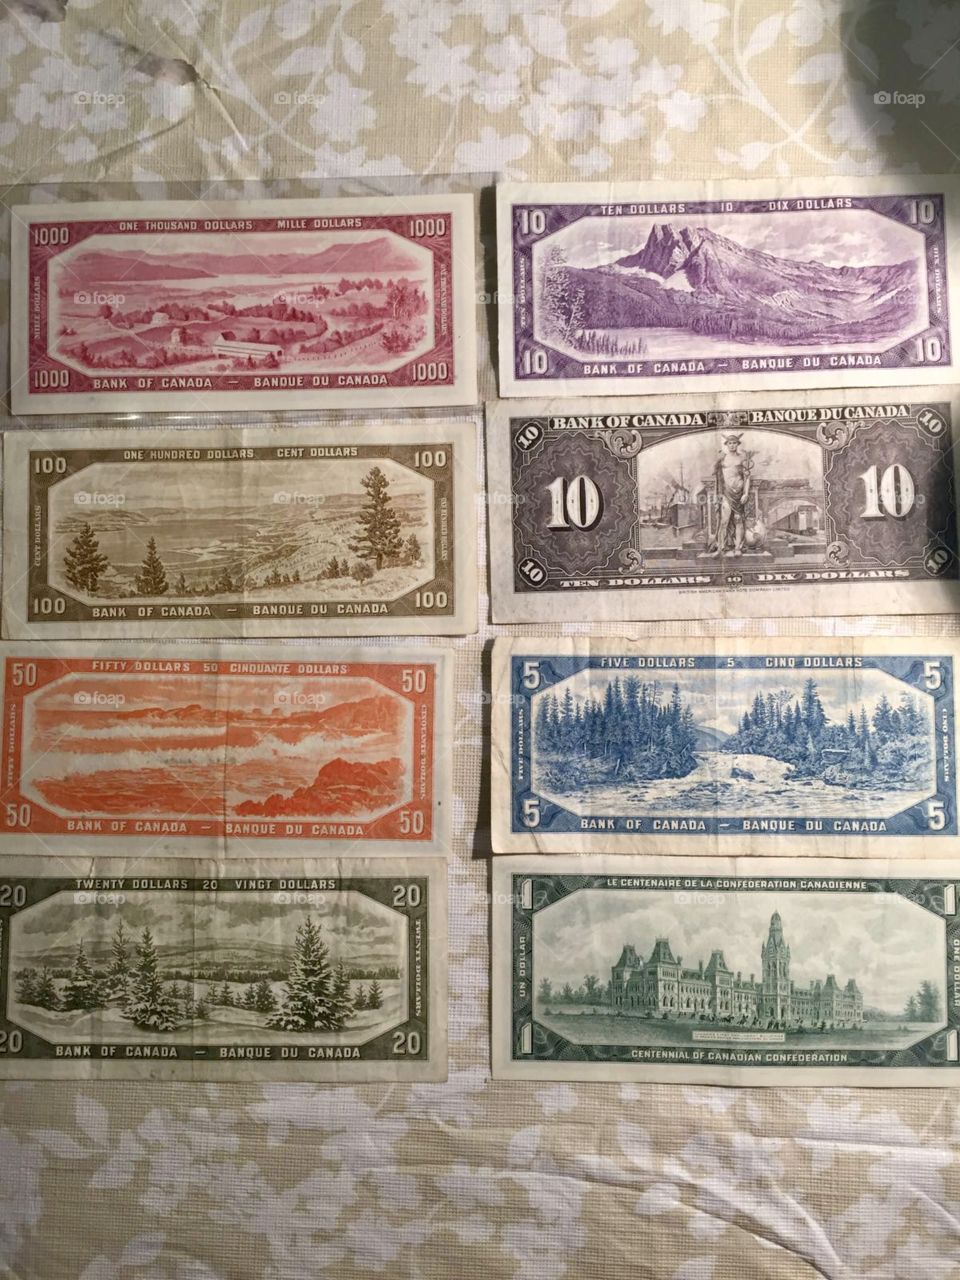 Vintage Canadian Bills - back design